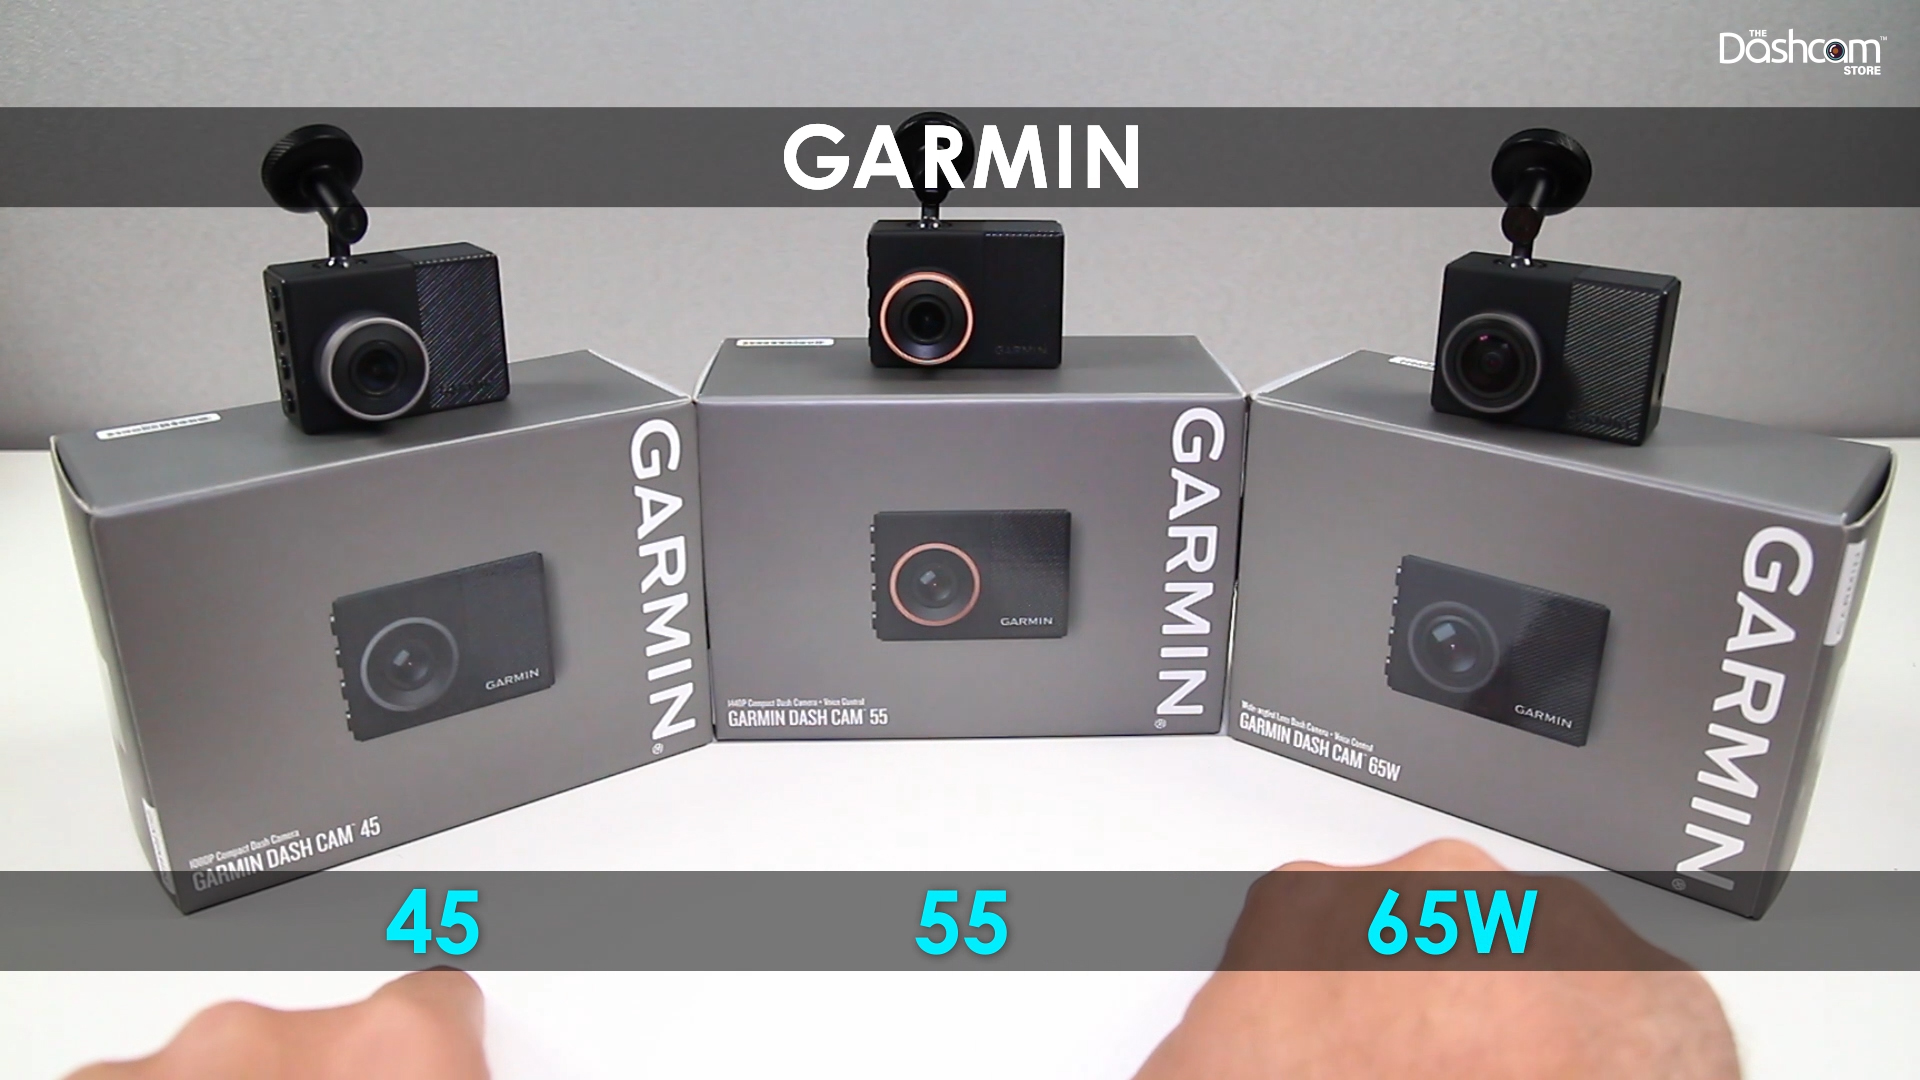 Garmin Dash Cam 65W review